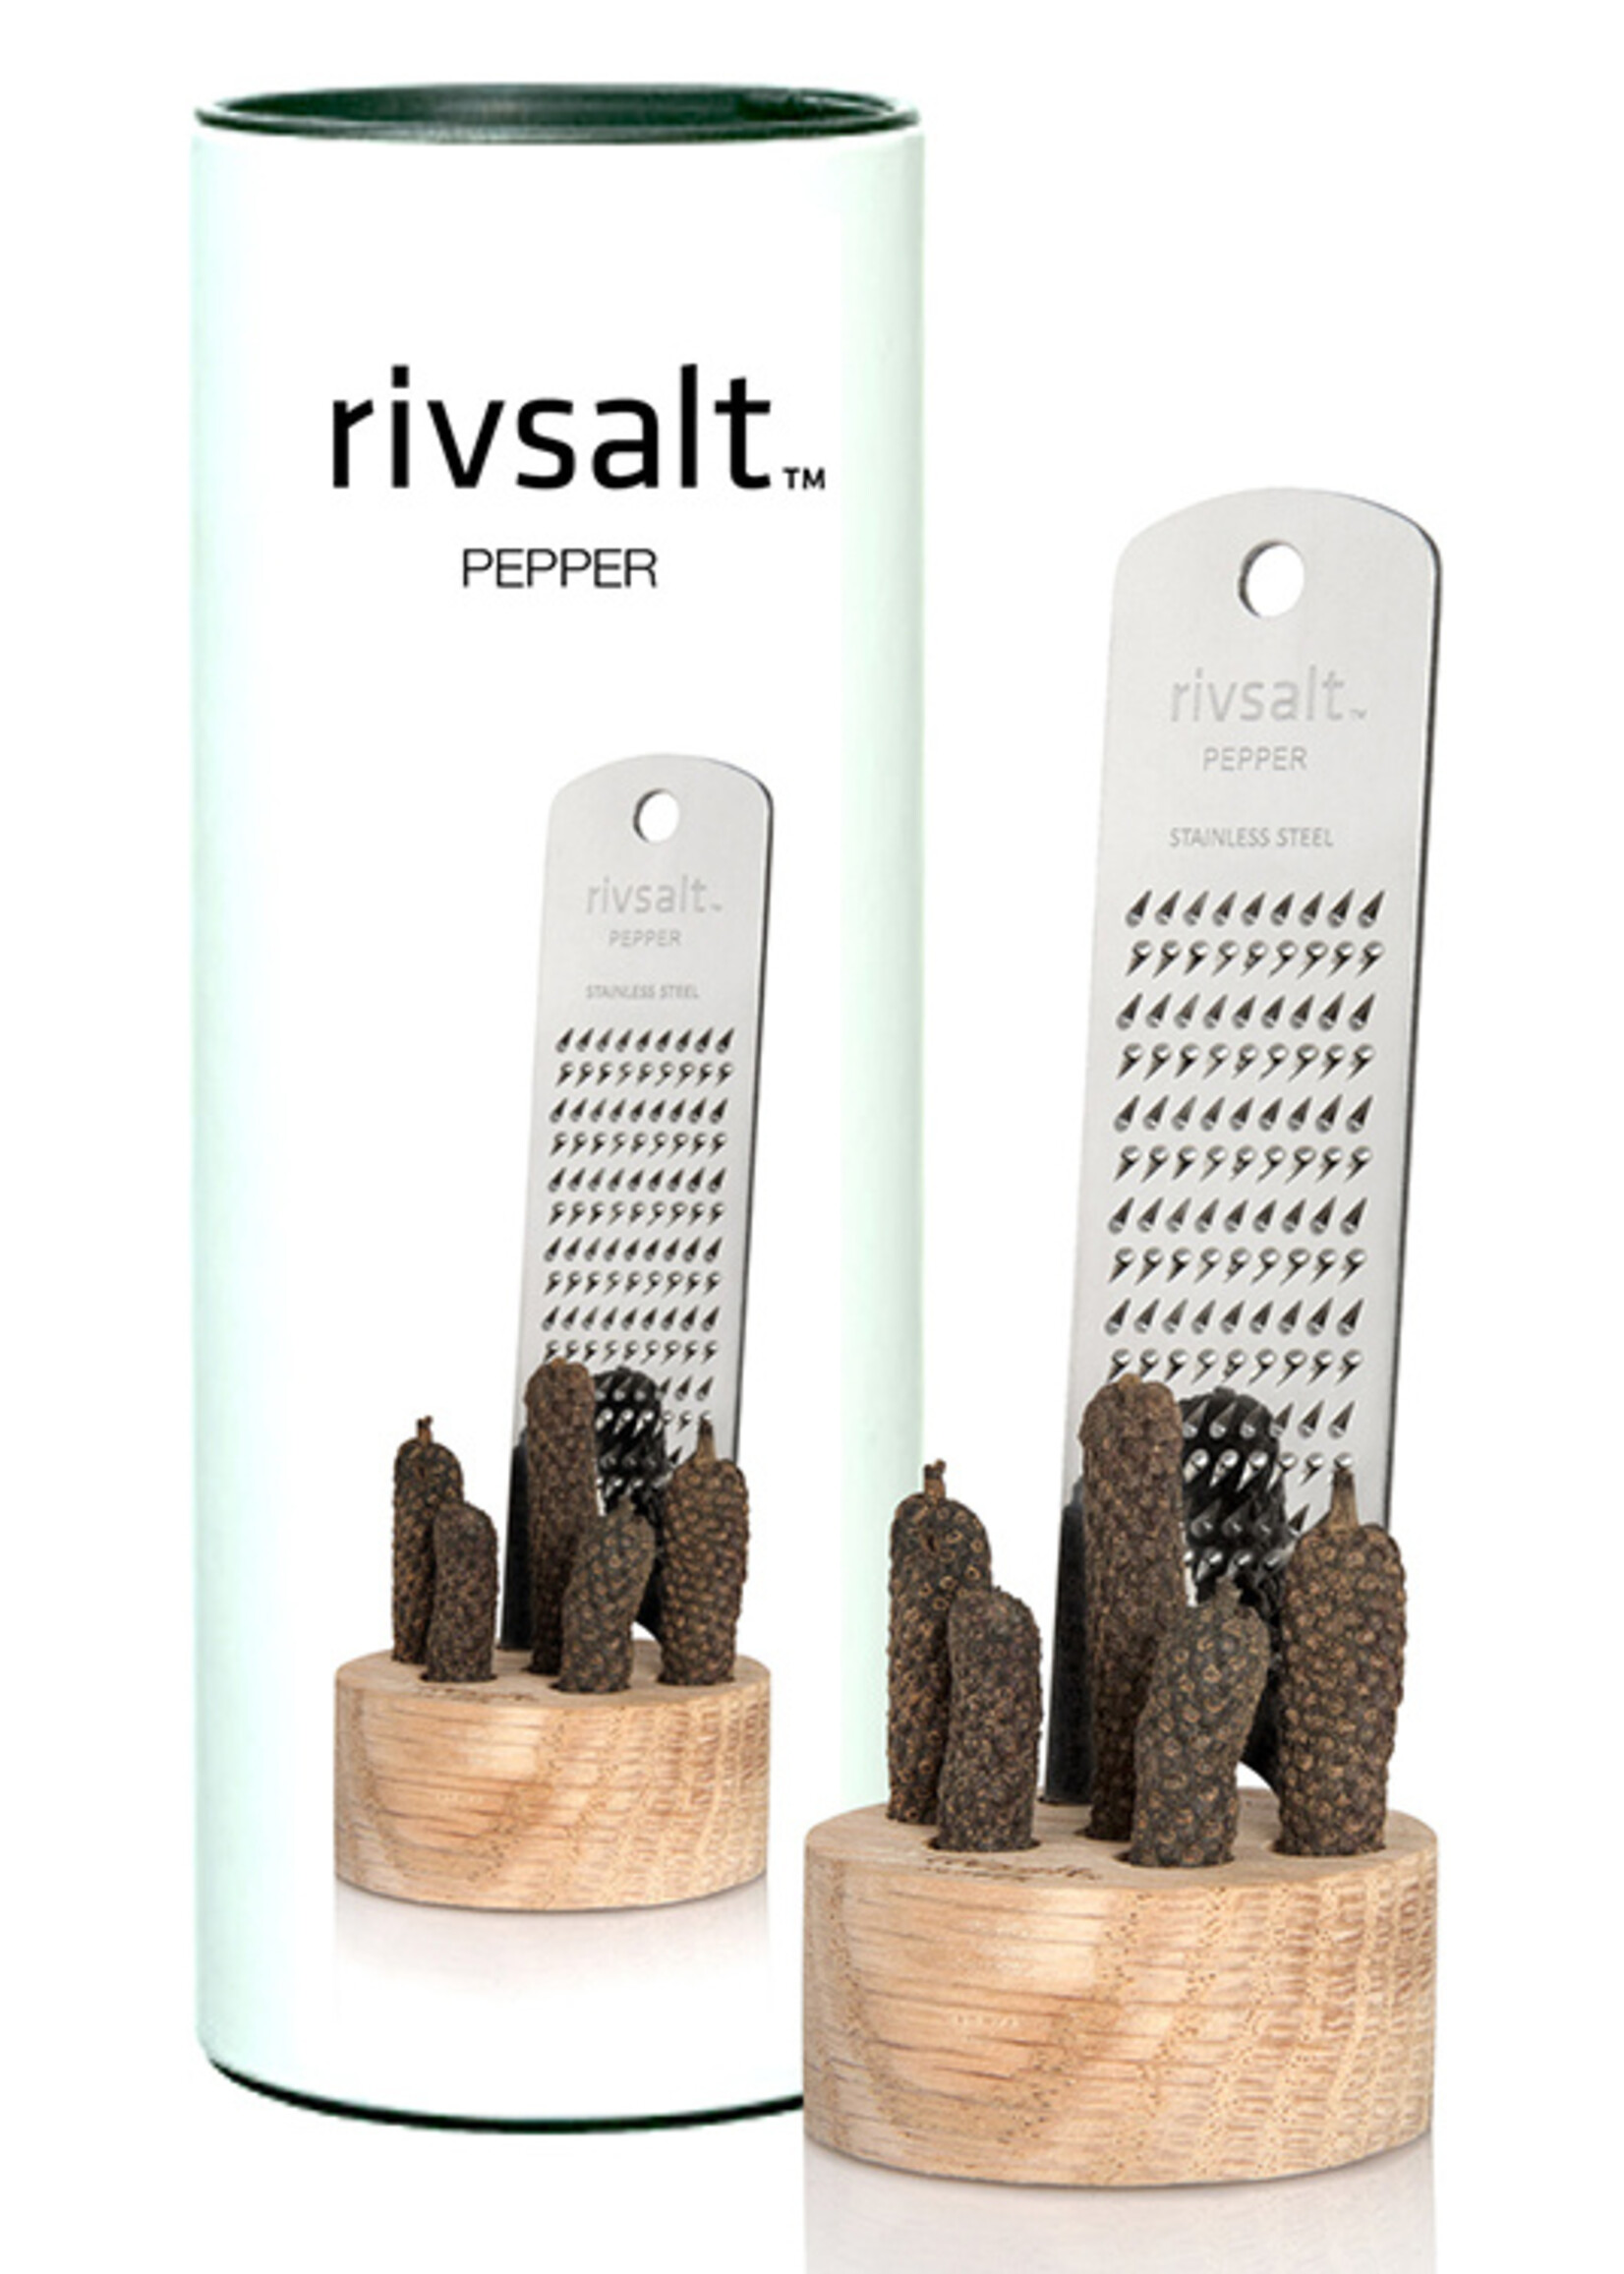 Rivsalt Peper geschenkdoos: rasp met peper uit Java